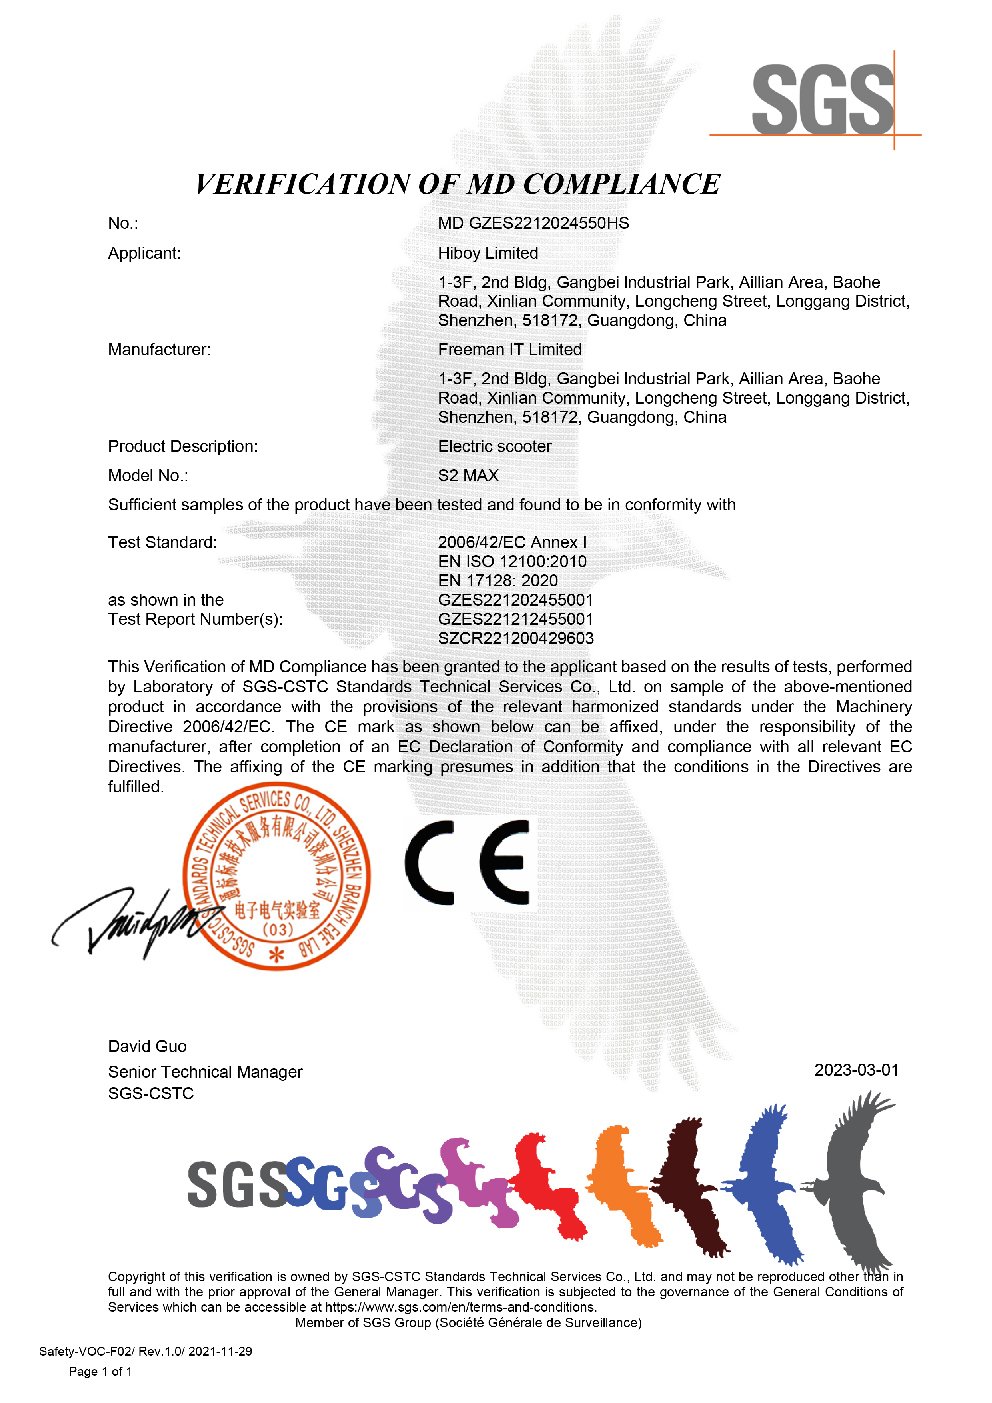 dss md gzes2212024550hs certificate of emc, md, en17128